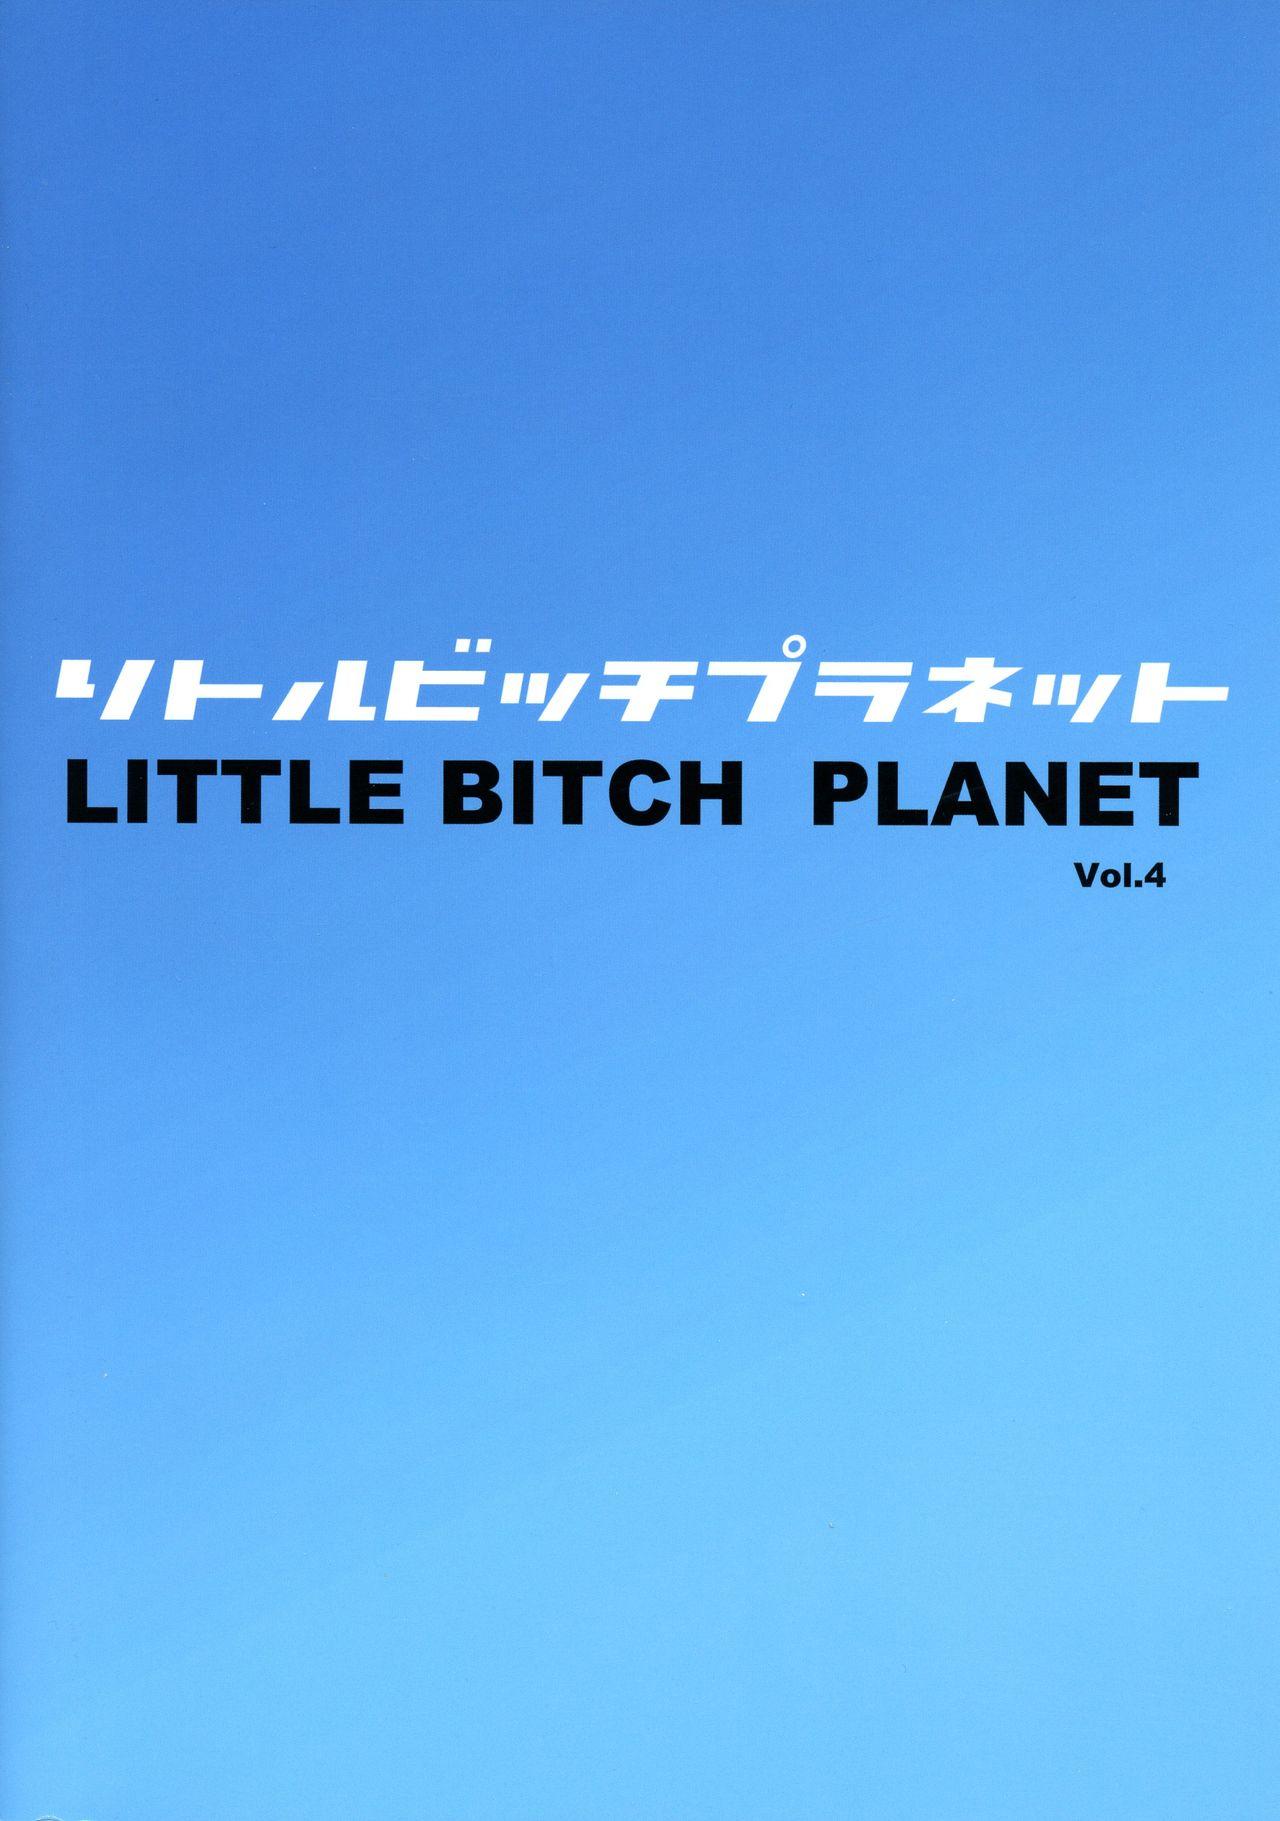 Little Bitch Planet Vol. 4 1